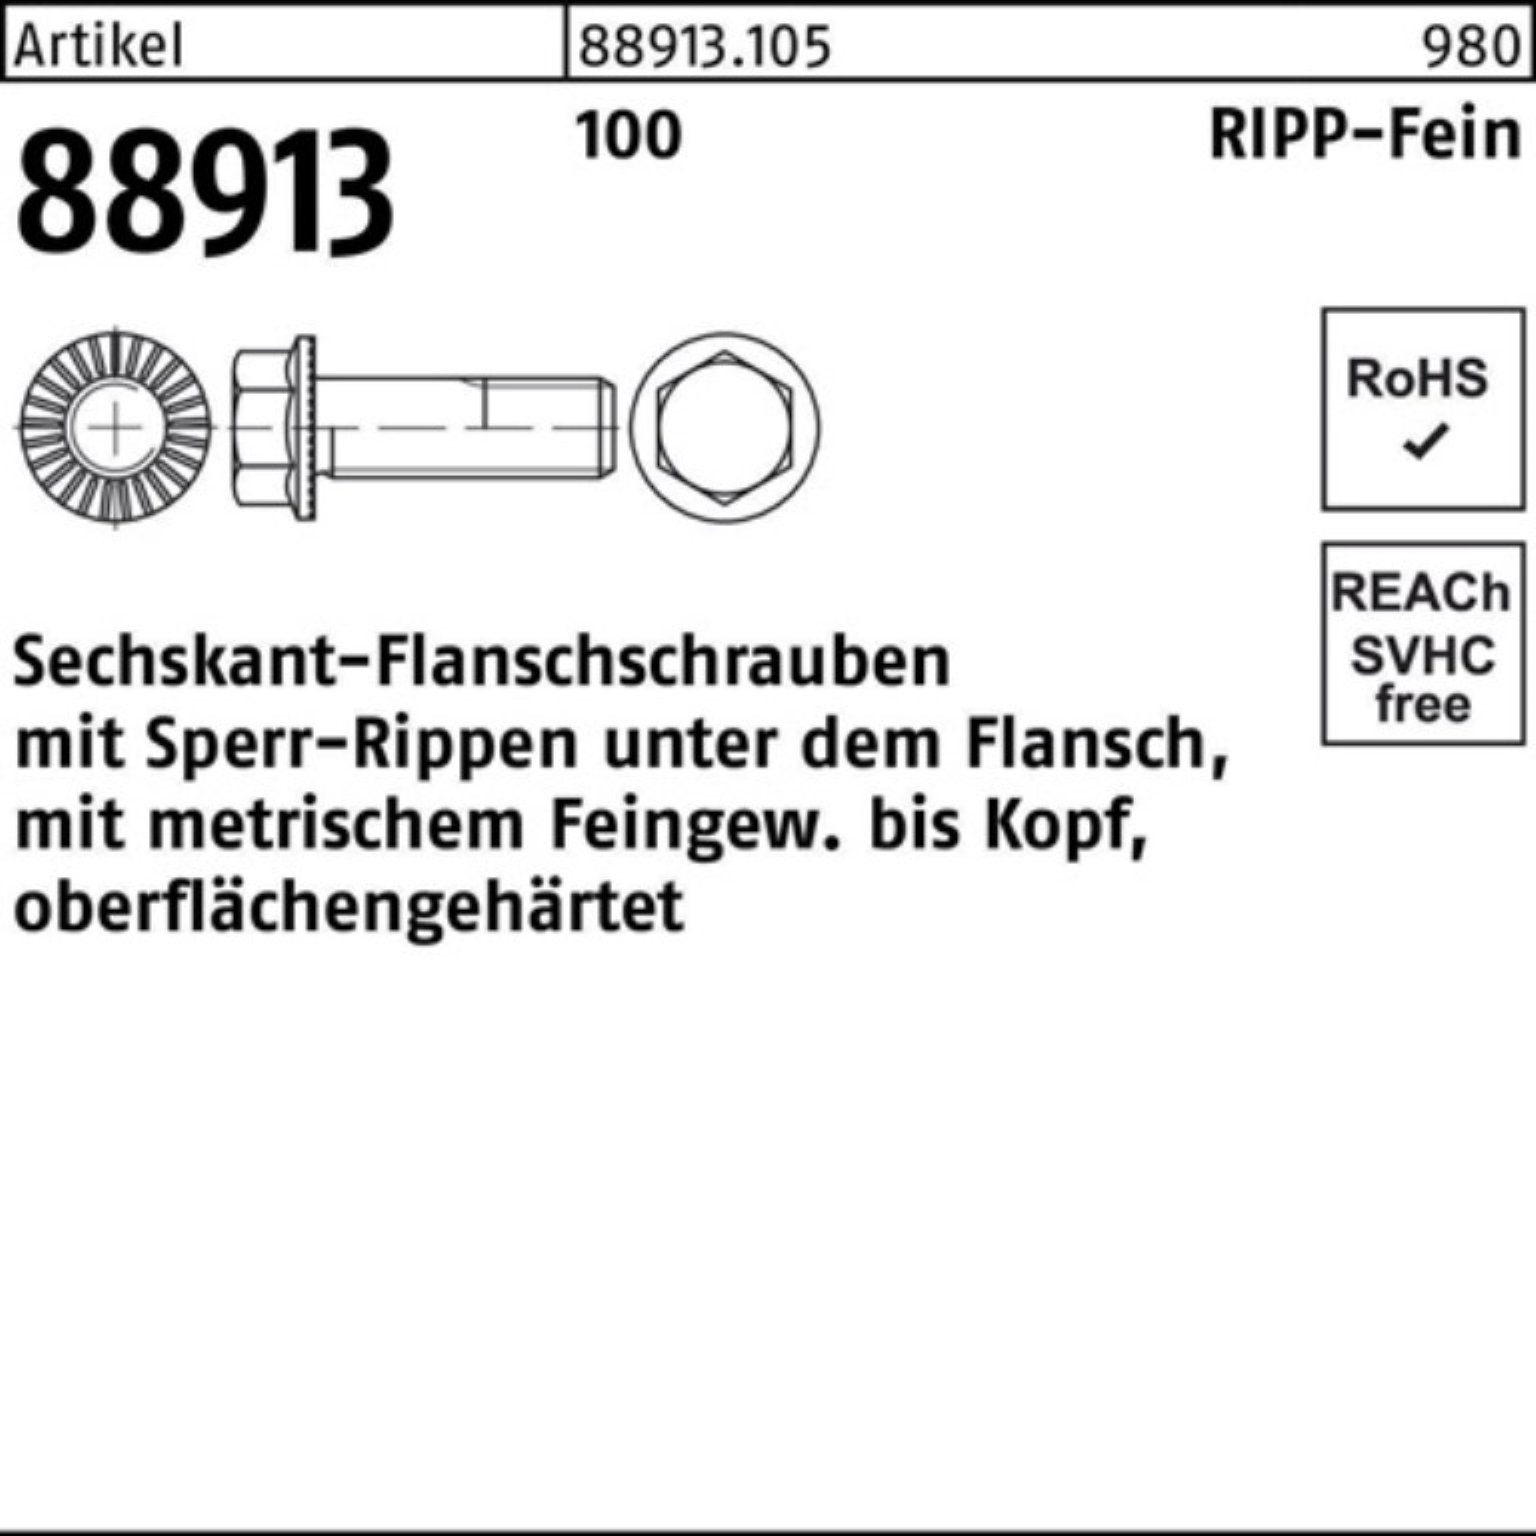 45 Schraube R 100er VG Sechskantflanschschraube 1,5x M14x Pack Sperr-Ripp Reyher 88913